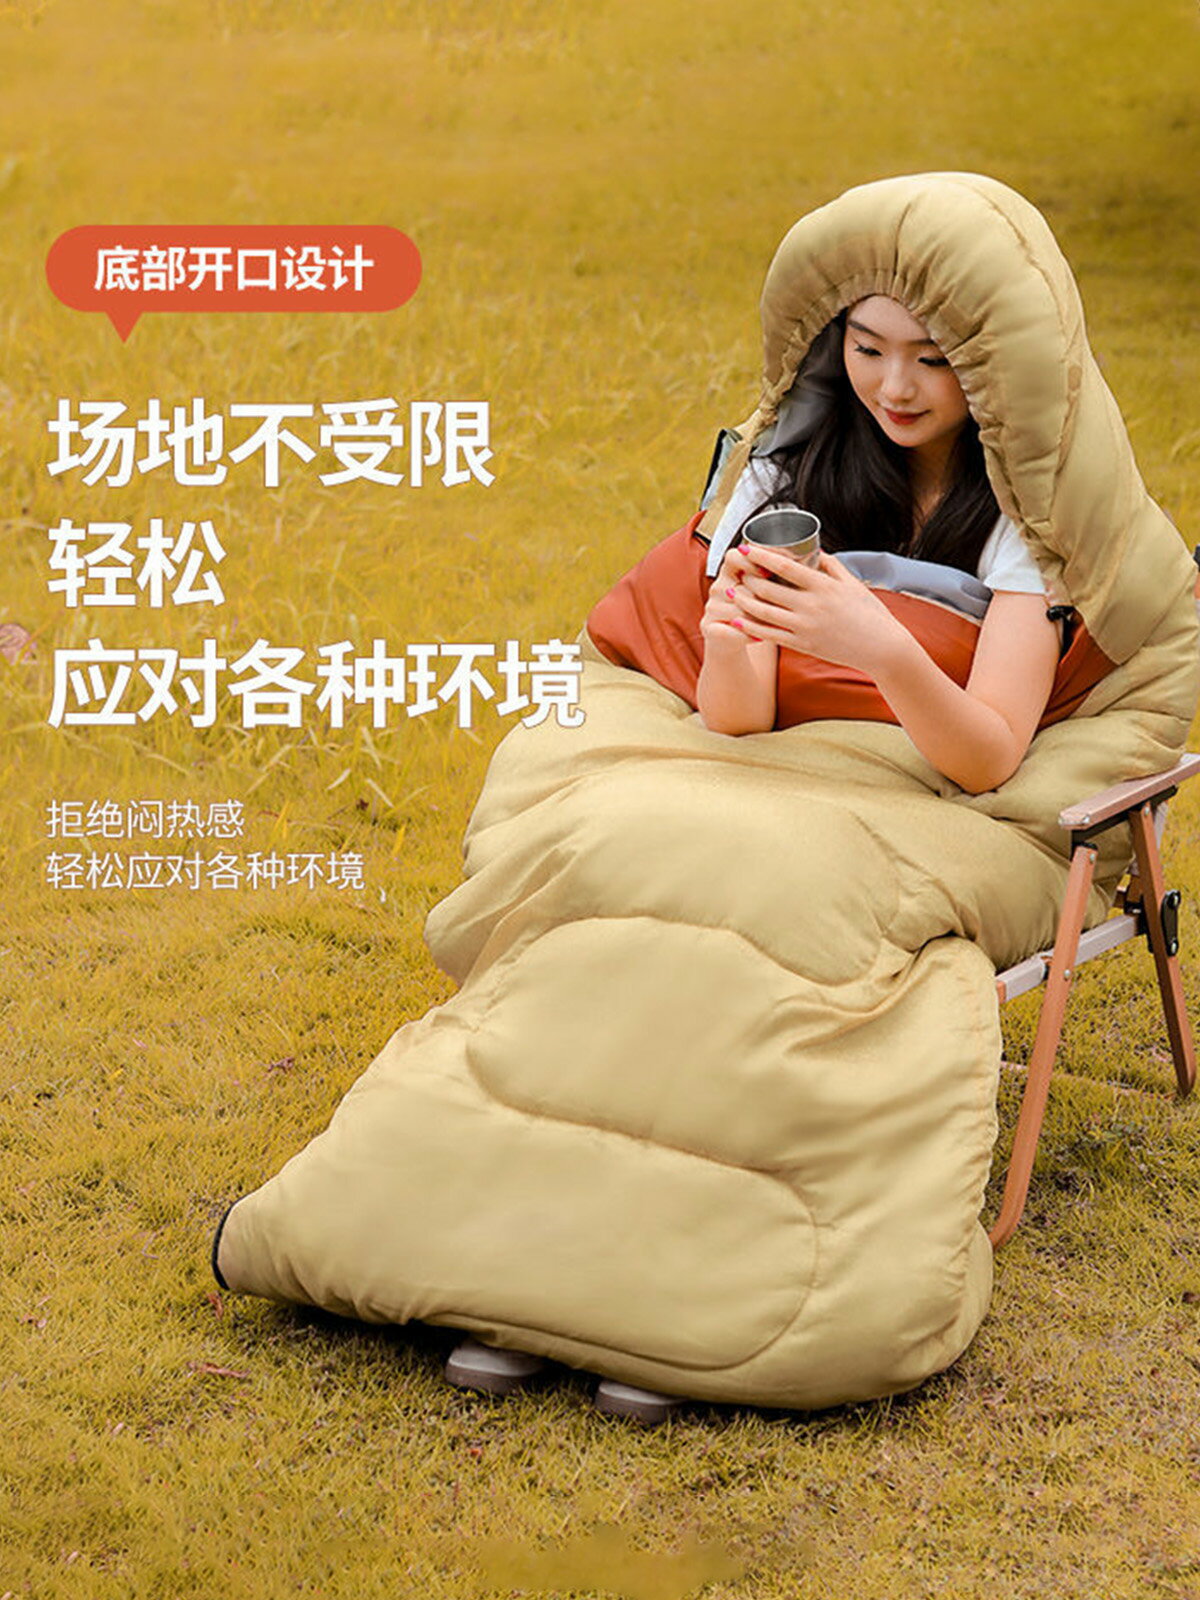 奧軒戶外露營睡袋成人冬季戶外加厚防寒露營隔臟睡袋被子保暖睡袋